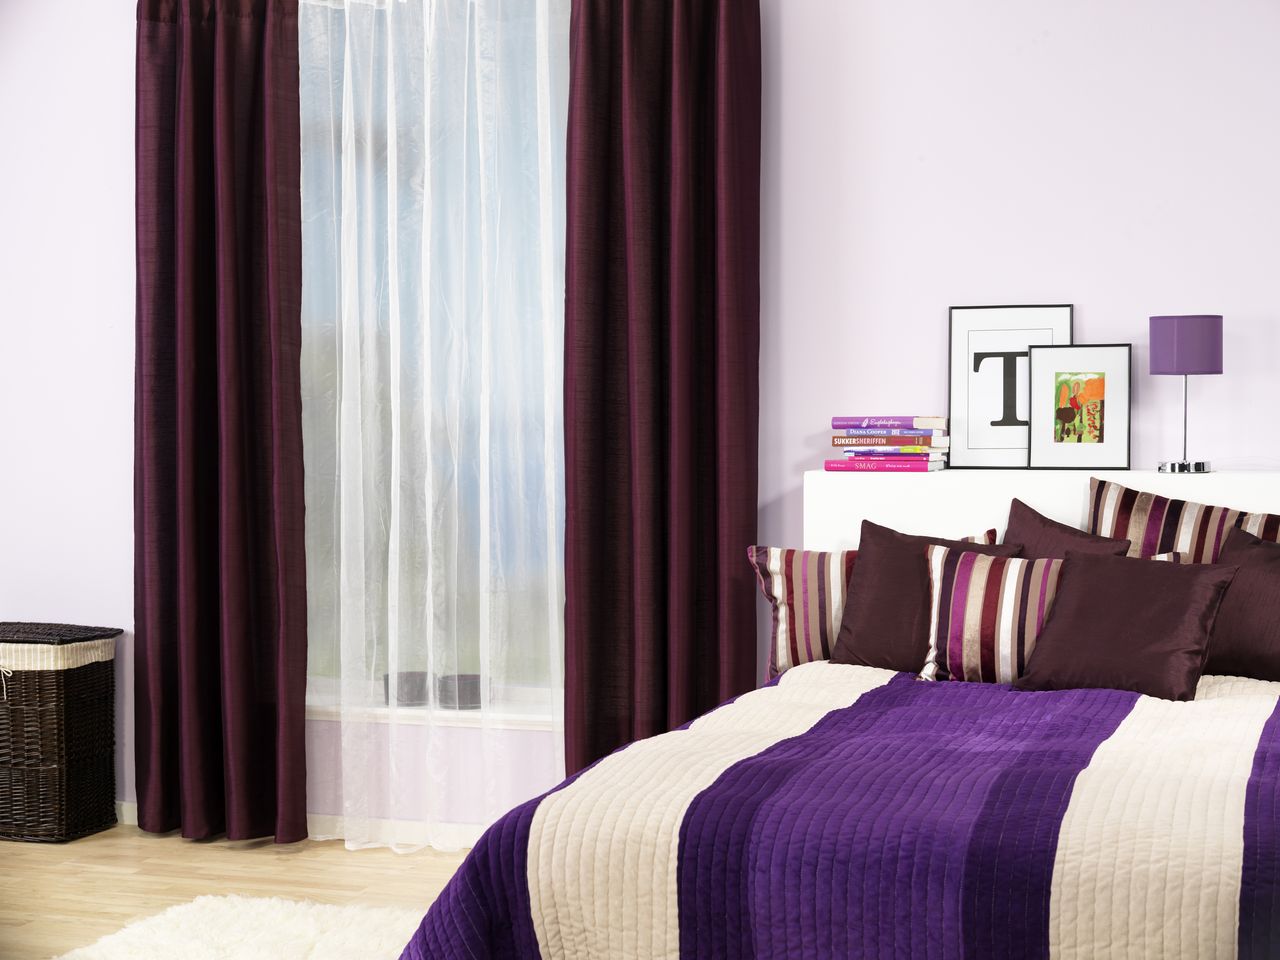 Mẫu phòng ngủ màu trắng - hồng - tím kết hợp đẹp, mới lạ, nhẹ nhàng, tinh tế